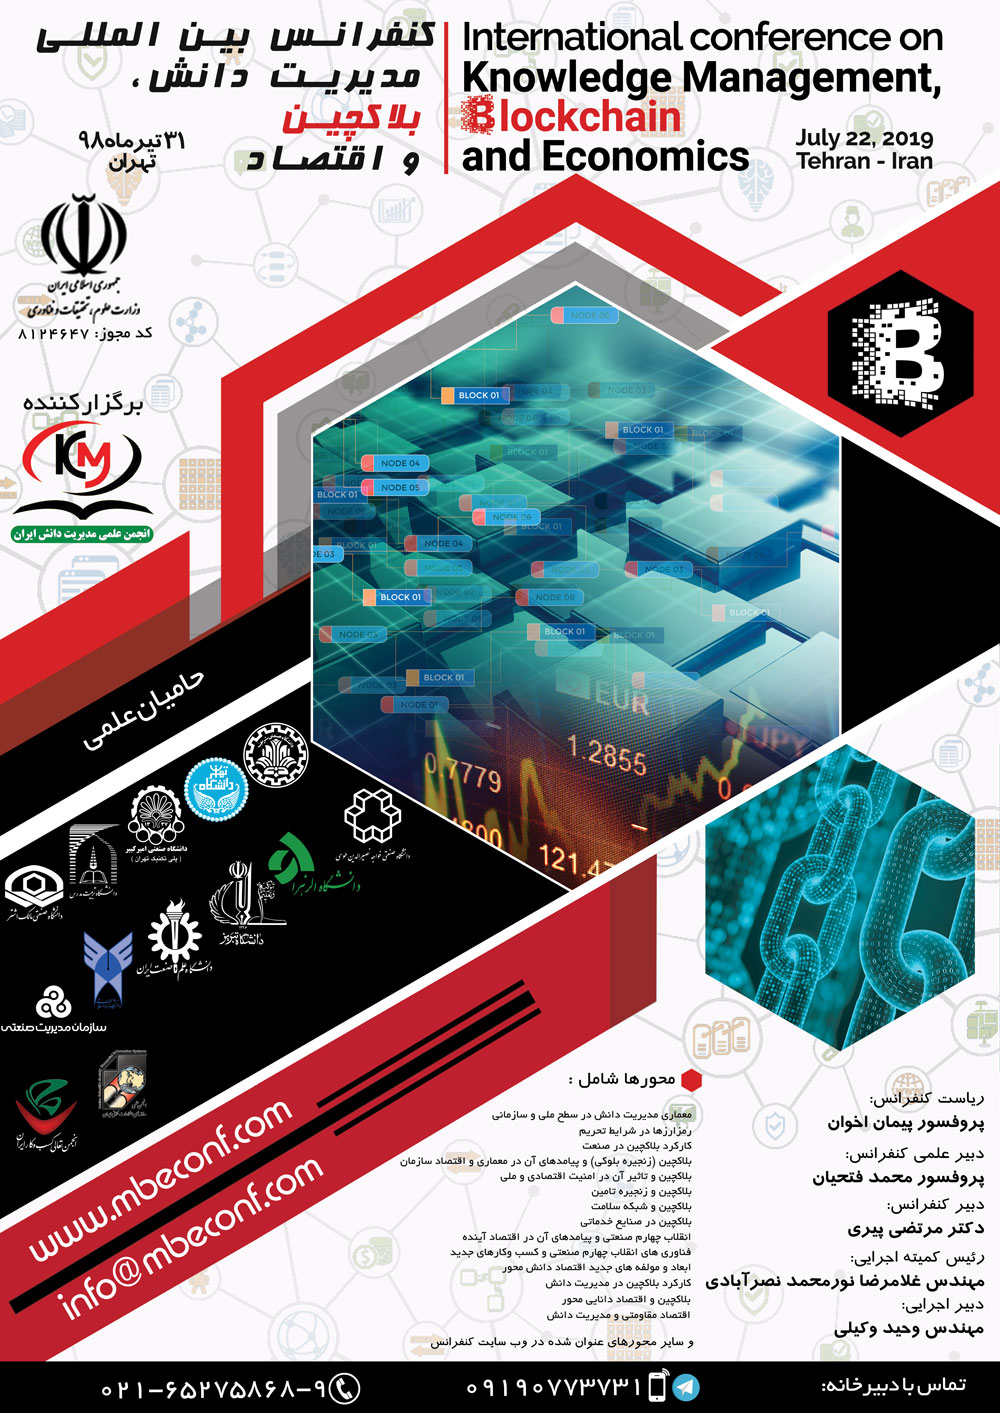 پوستر کنفرانس بین المللی مدیریت دانش، بلاکچین و اقتصاد